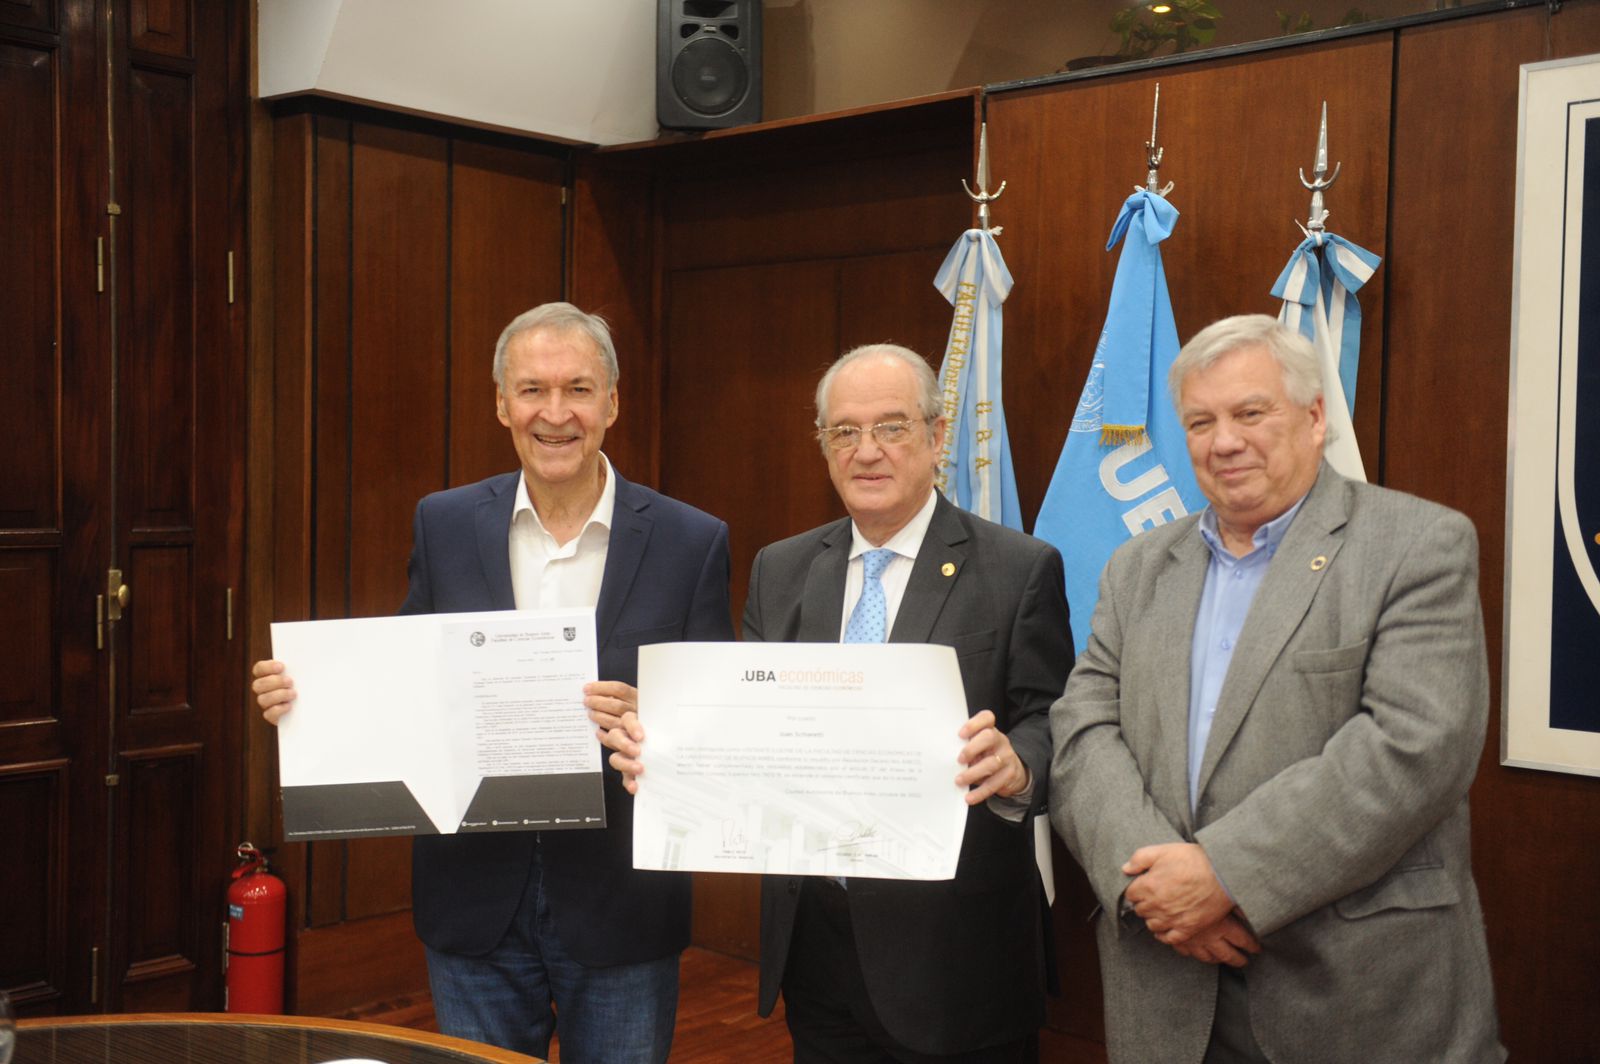 El gobernador fue recibido por el rector de la UBA, Ricardo Gelpi, y por el decano de la Facultad de Ciencias Económicas, Ricardo Pahlen Acuña